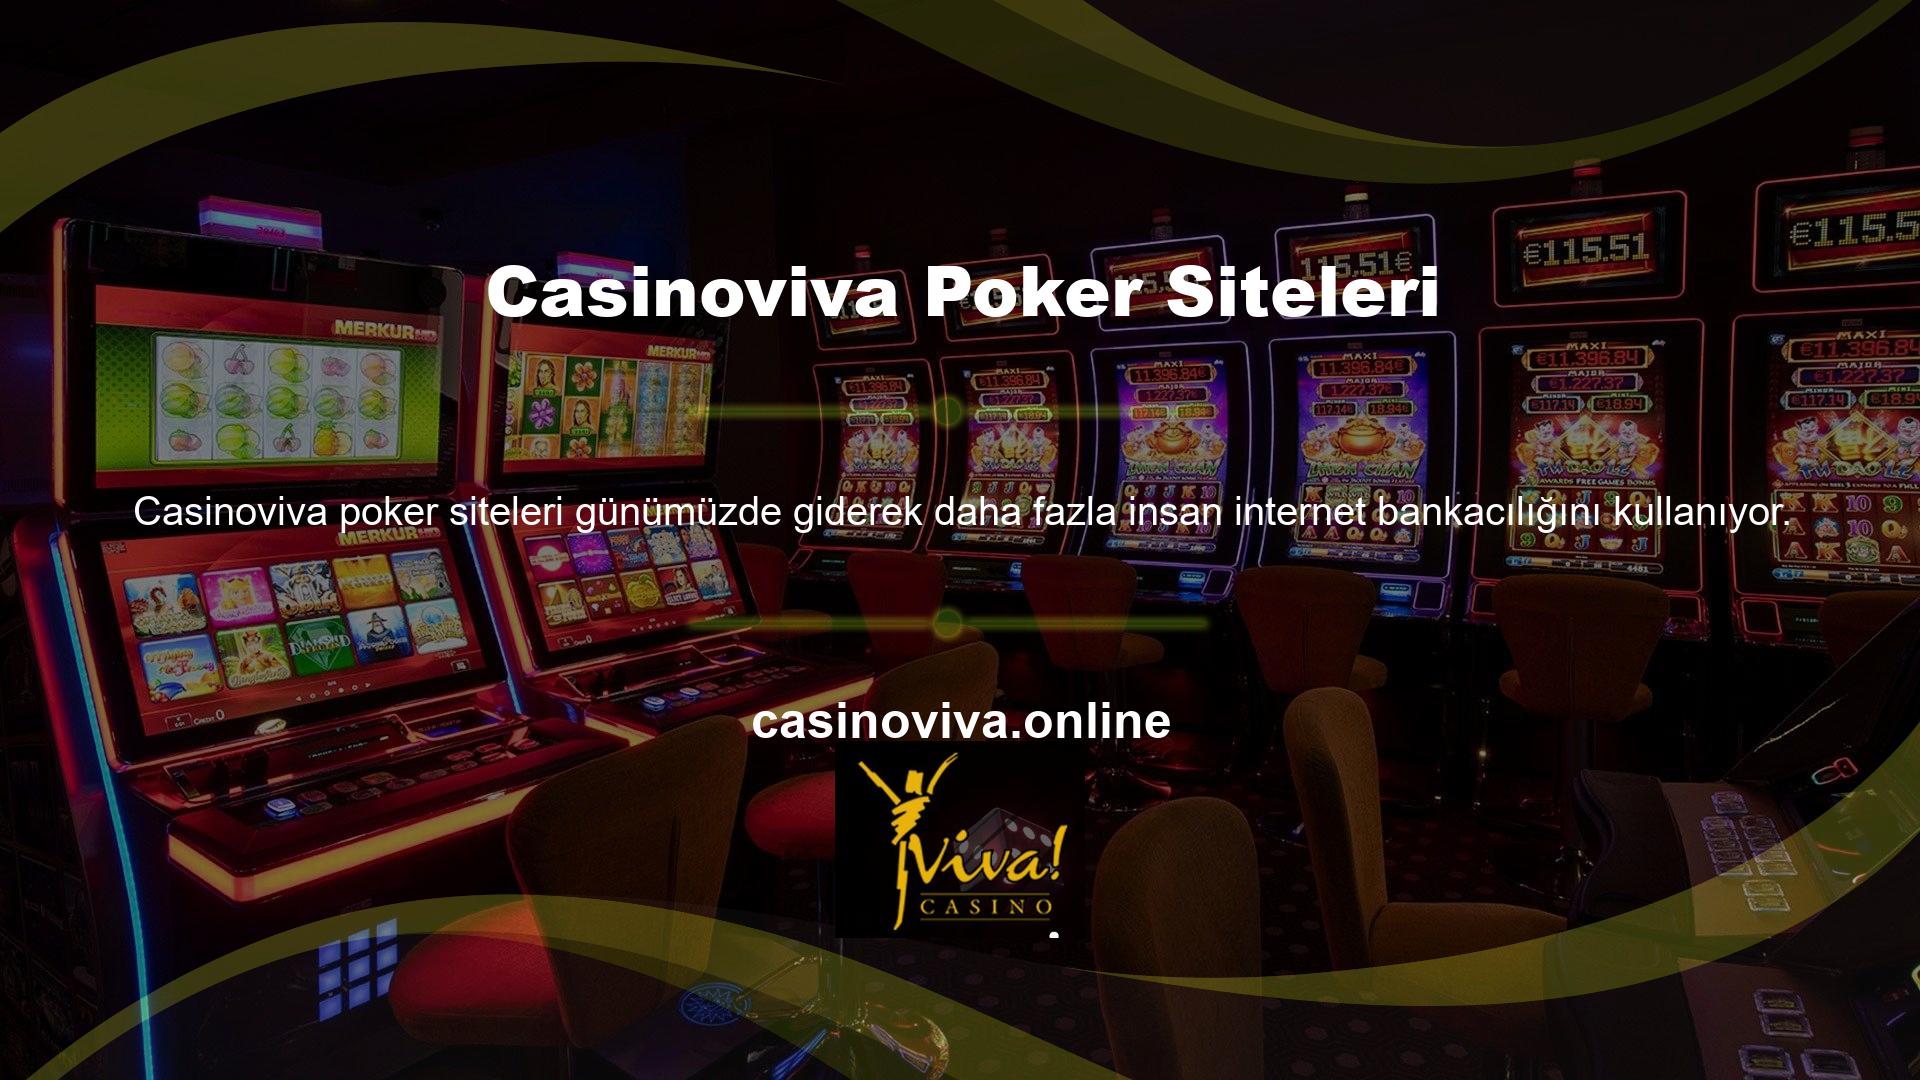 Kullanıcılar özellikle casino sitelerindeki dolandırıcılıkları göz önünde bulundurarak paralarını güvende tutmak için farklı çözümler aramaktadır